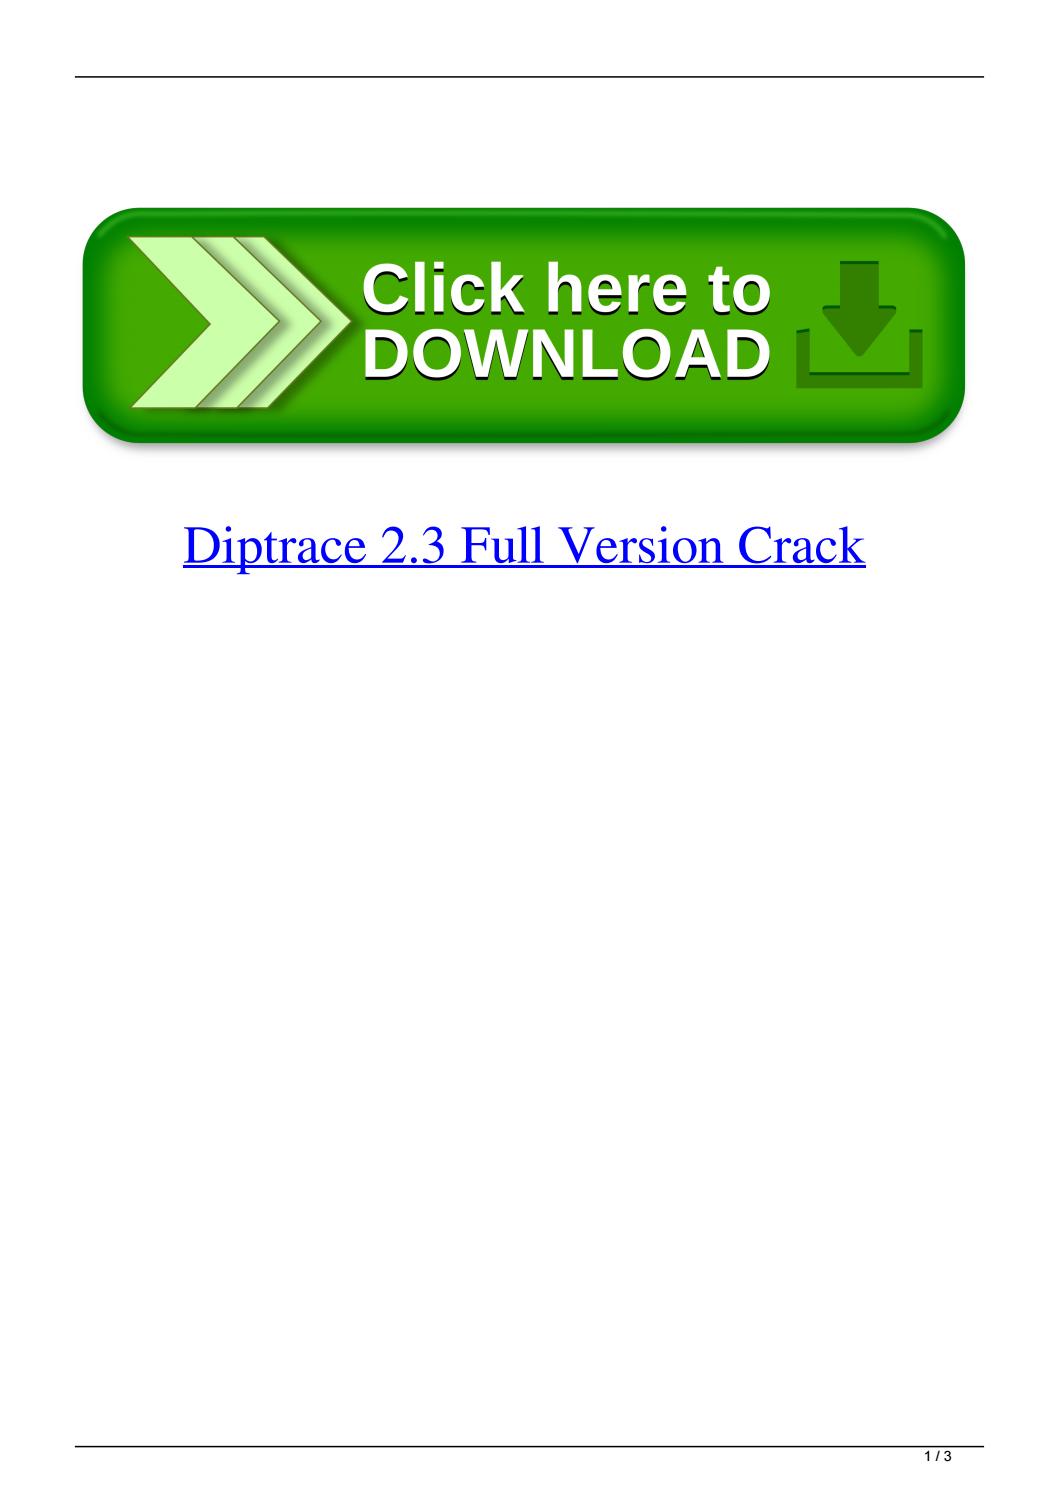 diptrace torrent download